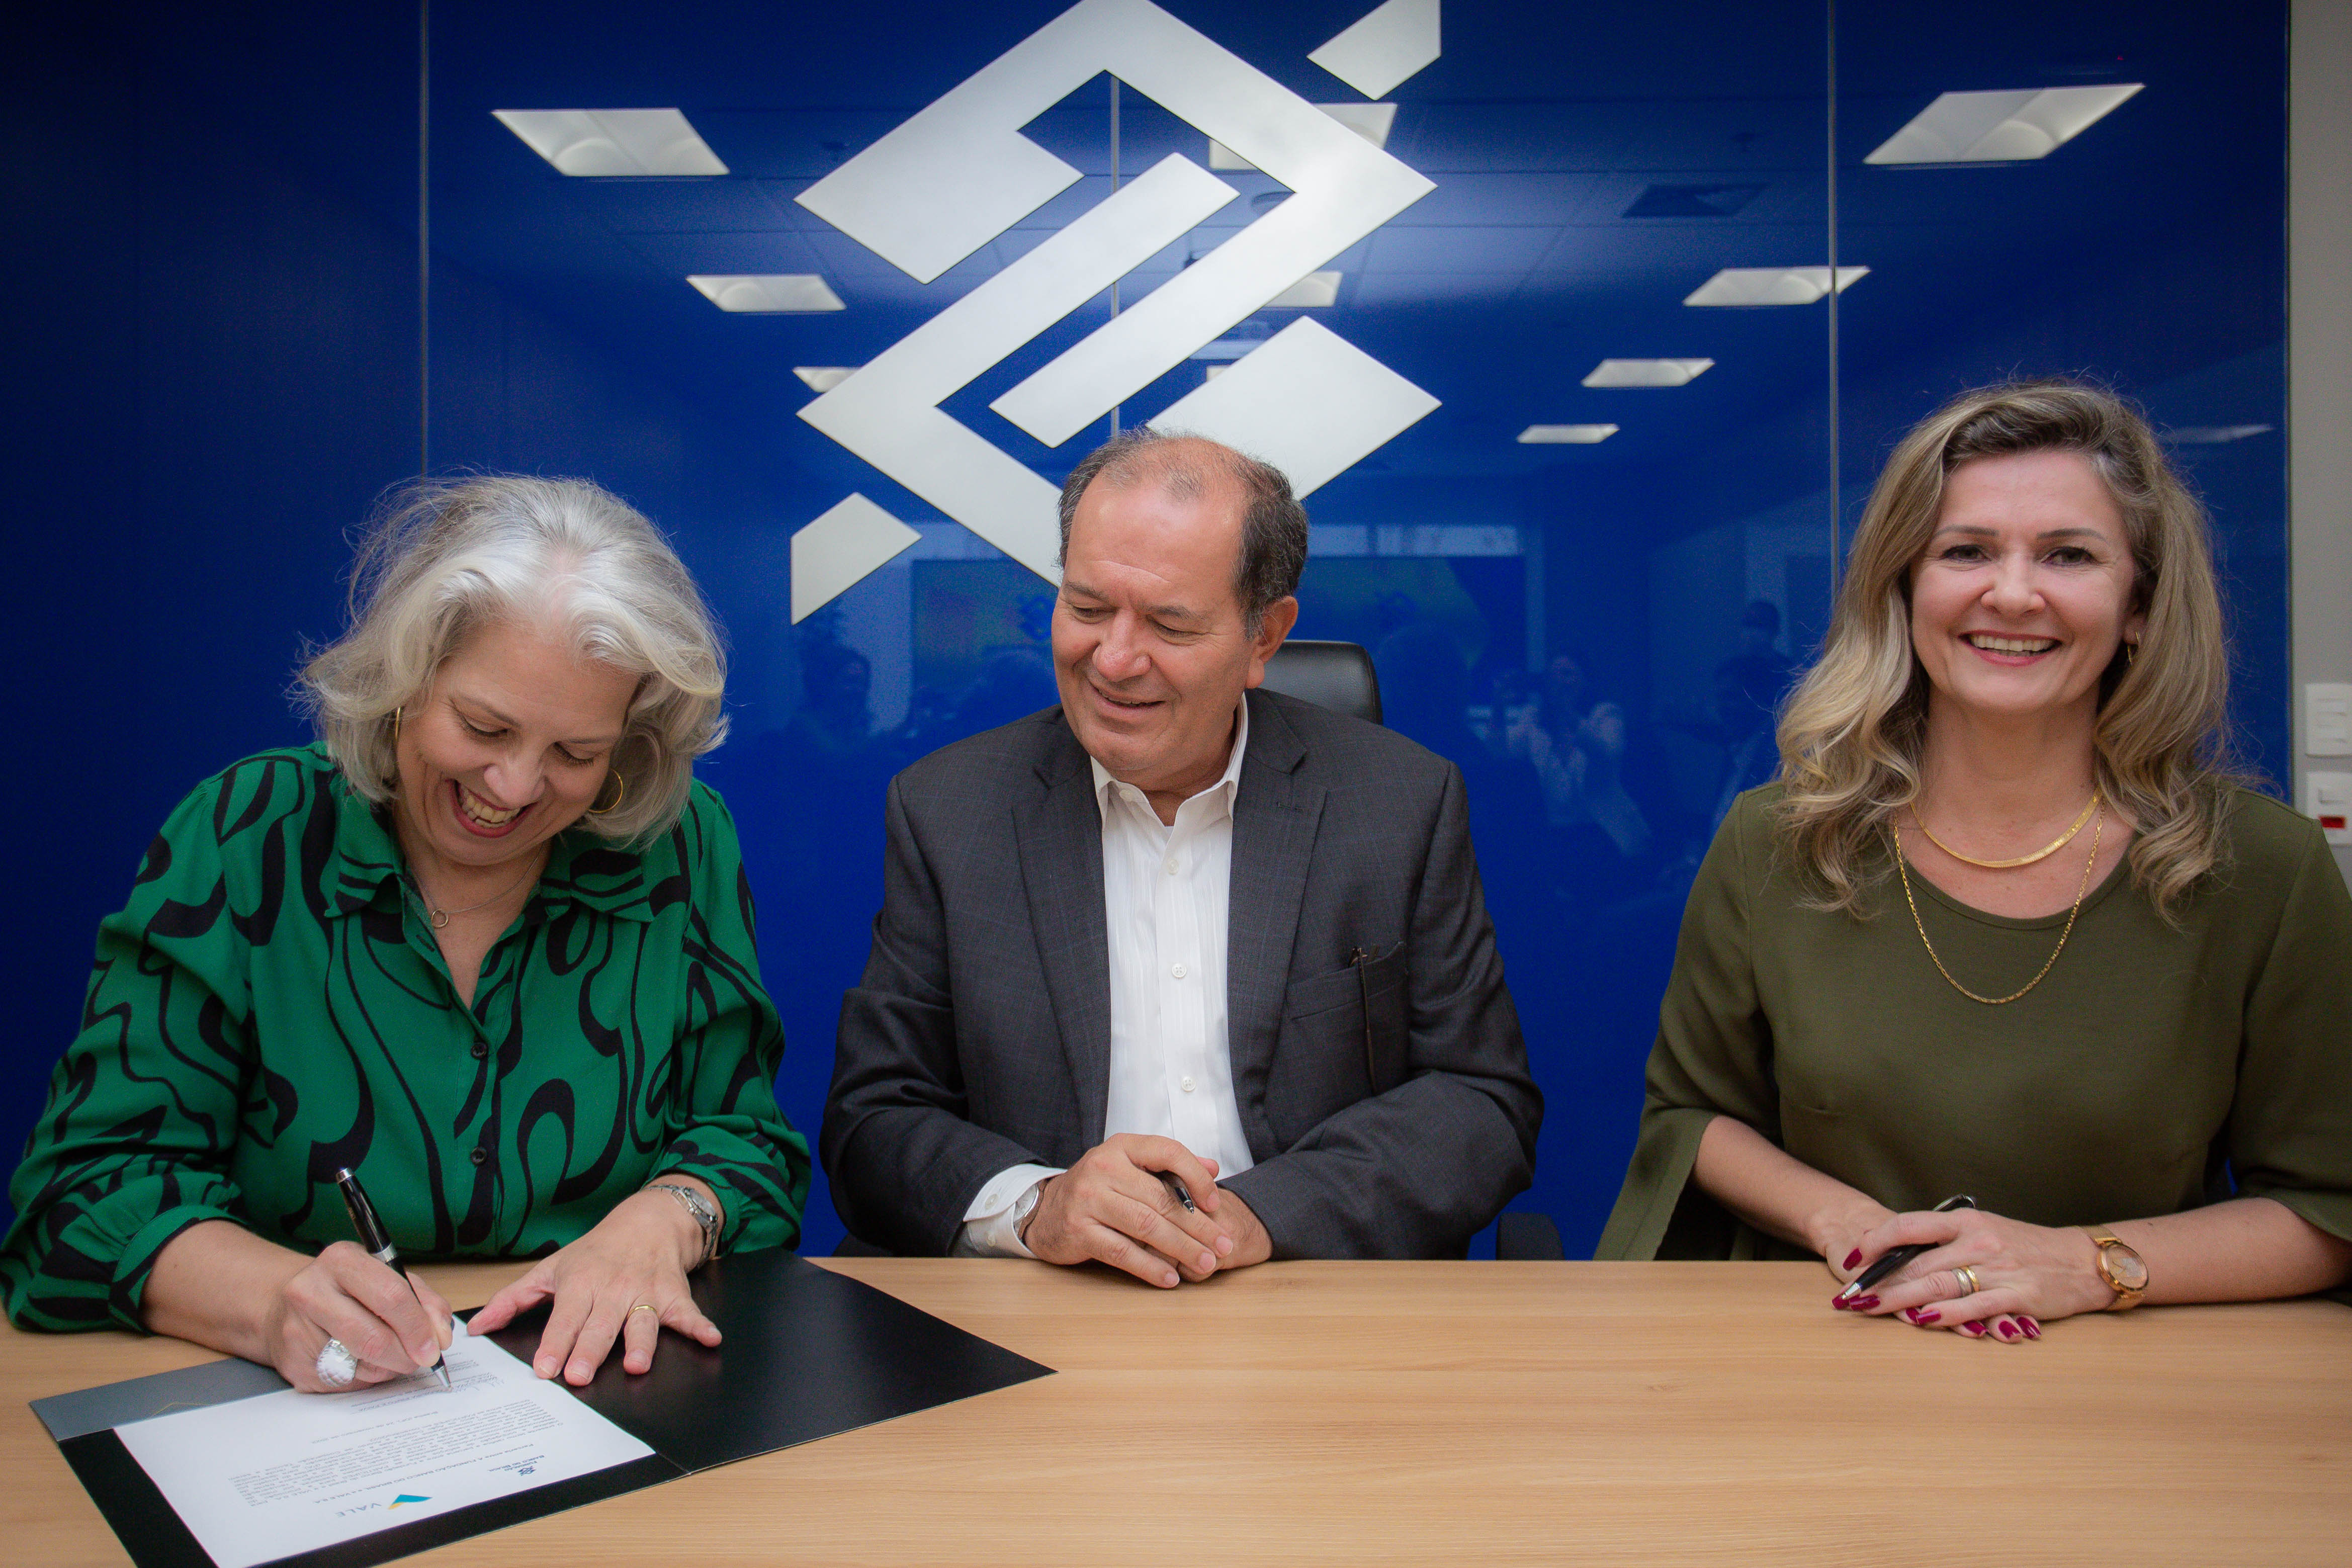 Foto de duas mulheres nas pontas e um homem no meio, sentados e apoiados em uma mesa sorrindo. A mulher da esquerda está assinando um papel.